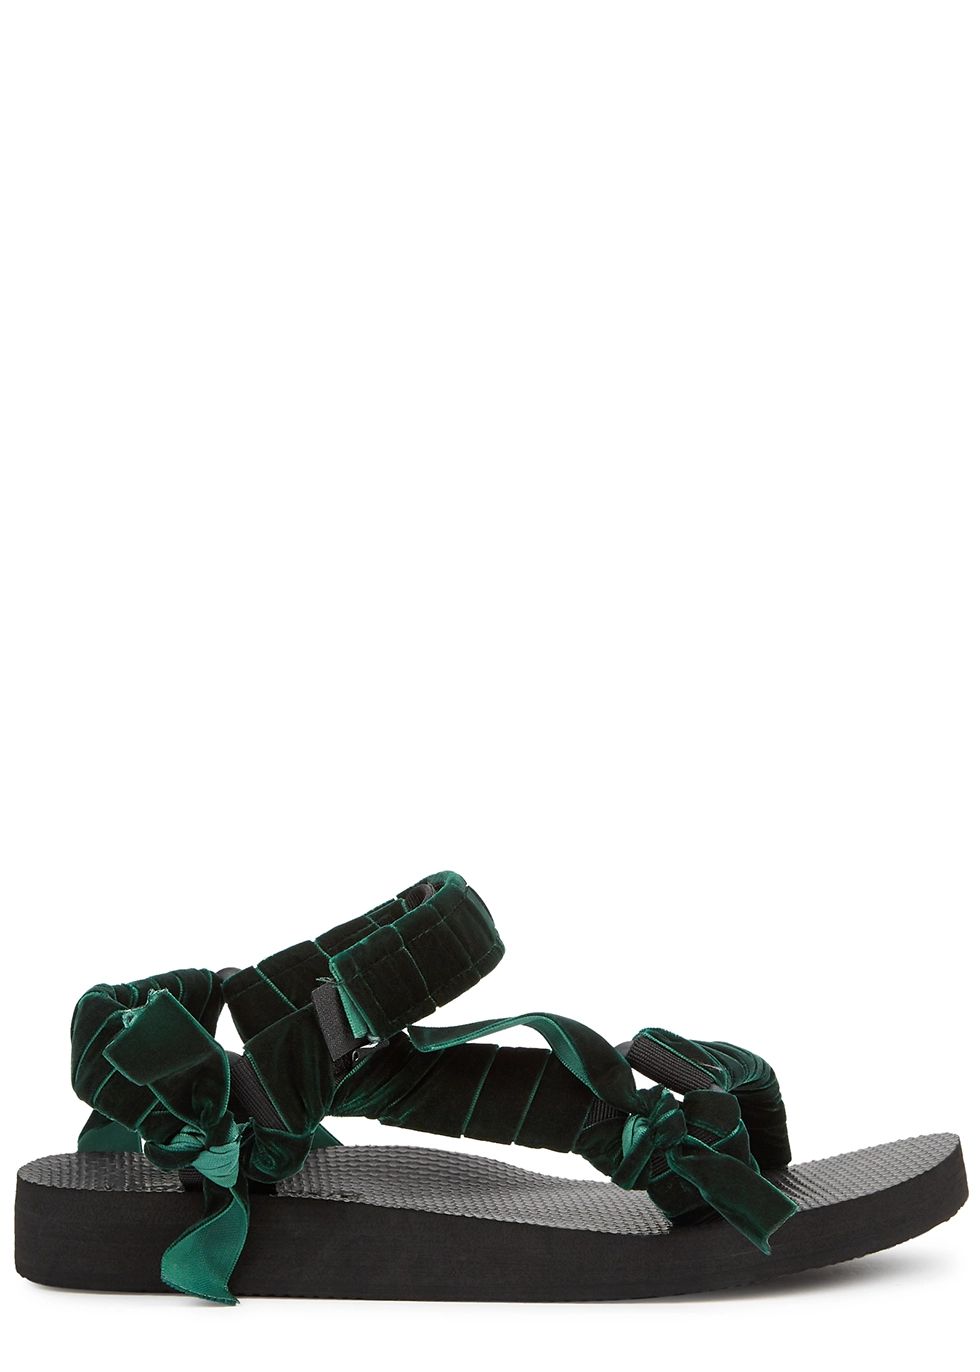 Trekky green velvet-trimmed sandals | Harvey Nichols 